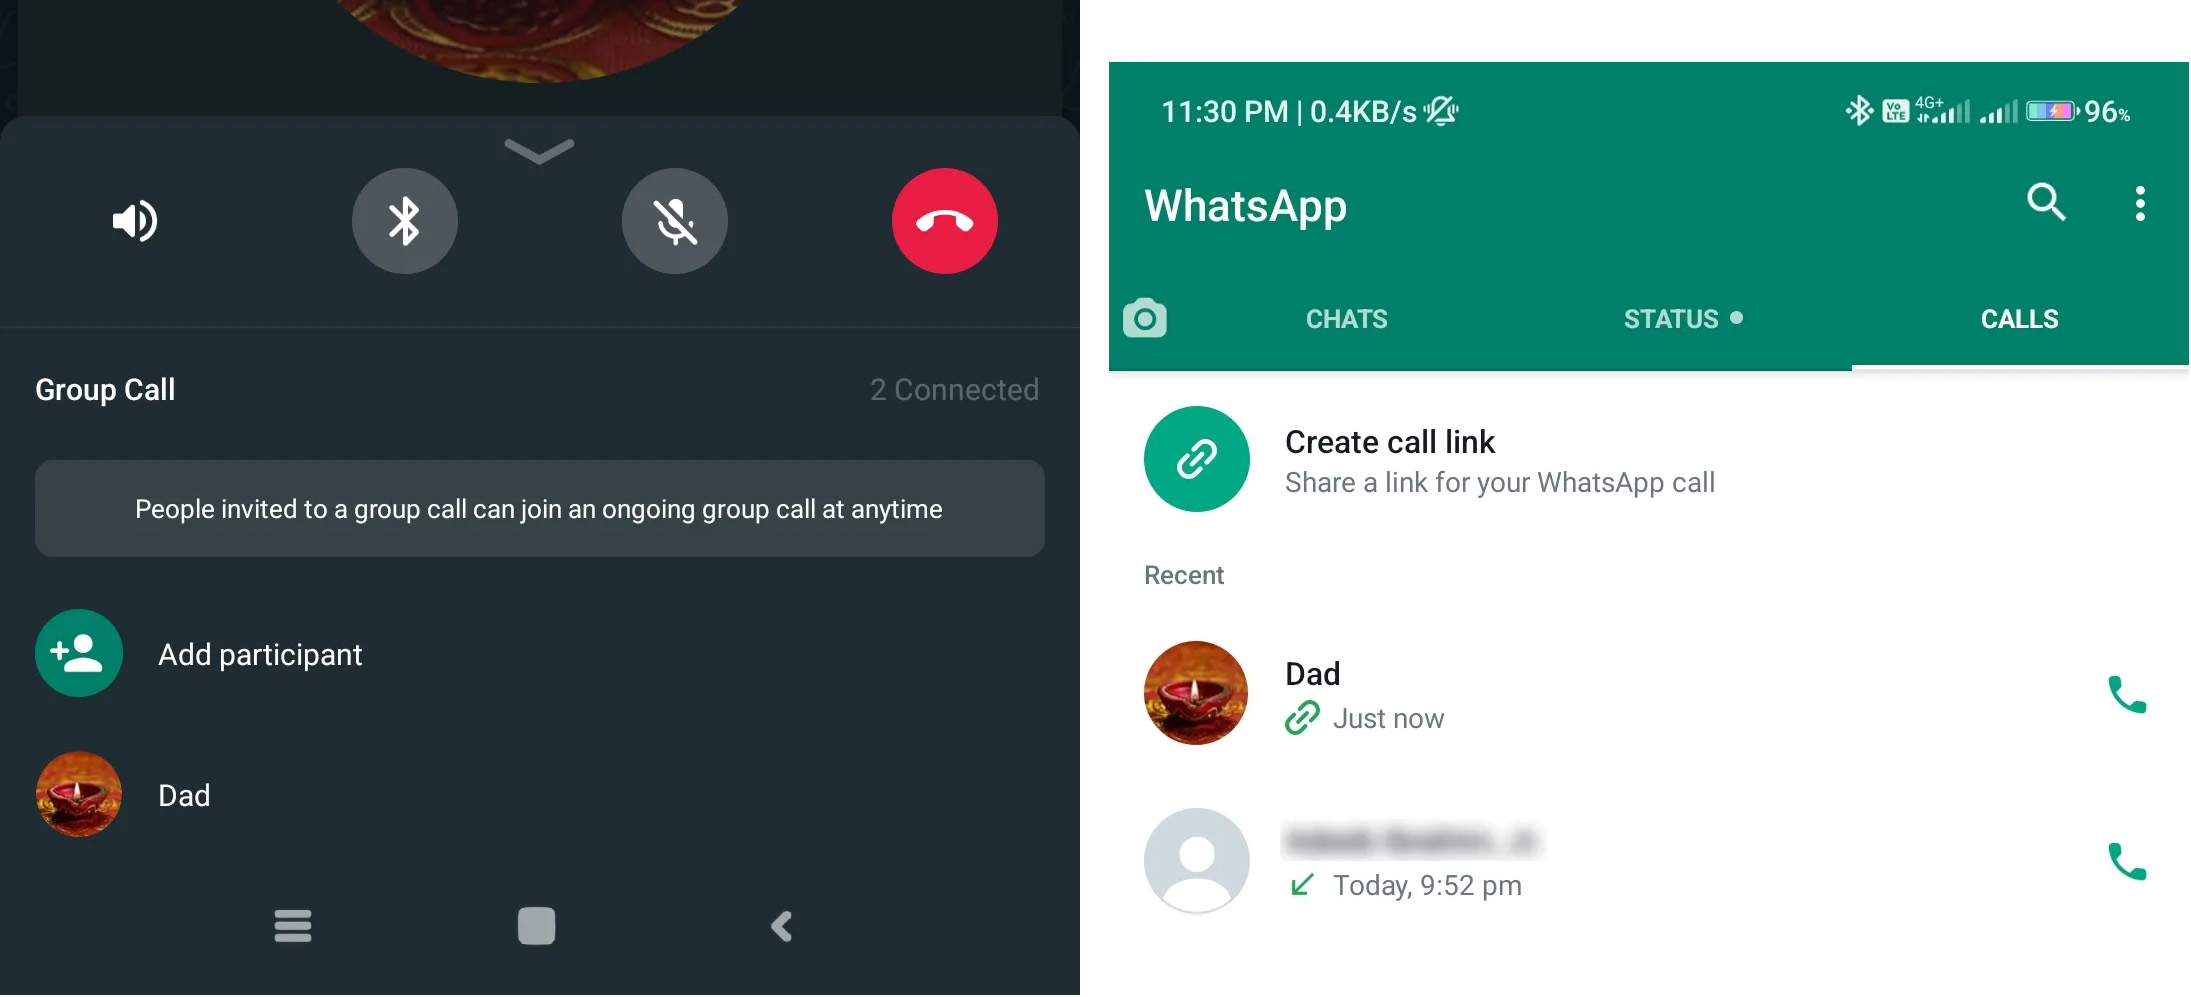 Rozmowa przez link przez WhatsApp jest niebezpieczna